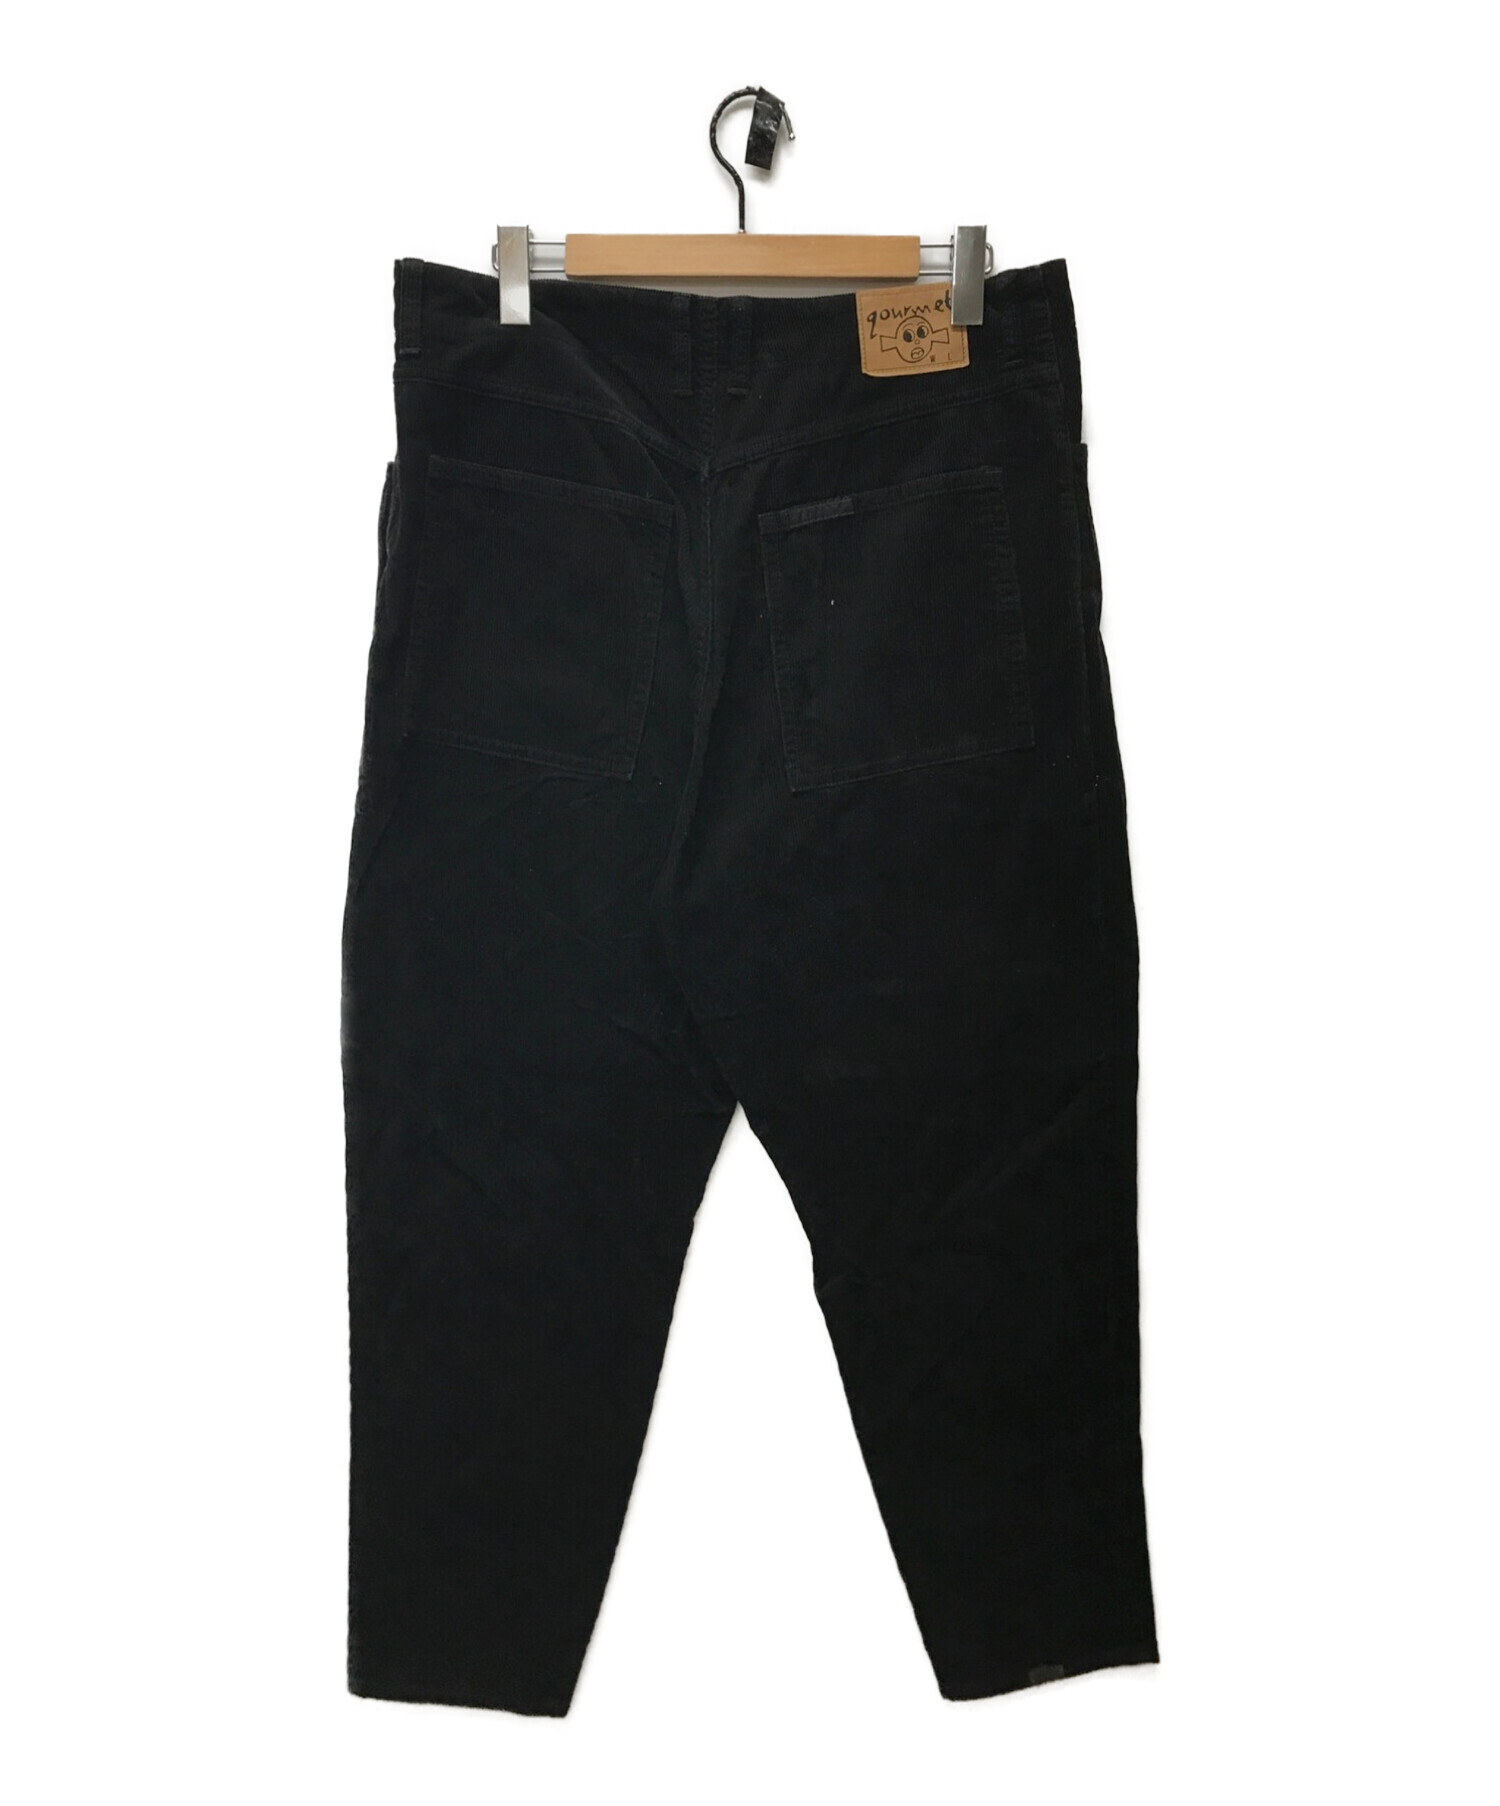 gourmet jeans TYPE-03 LEAN コーデュロイ | hartwellspremium.com